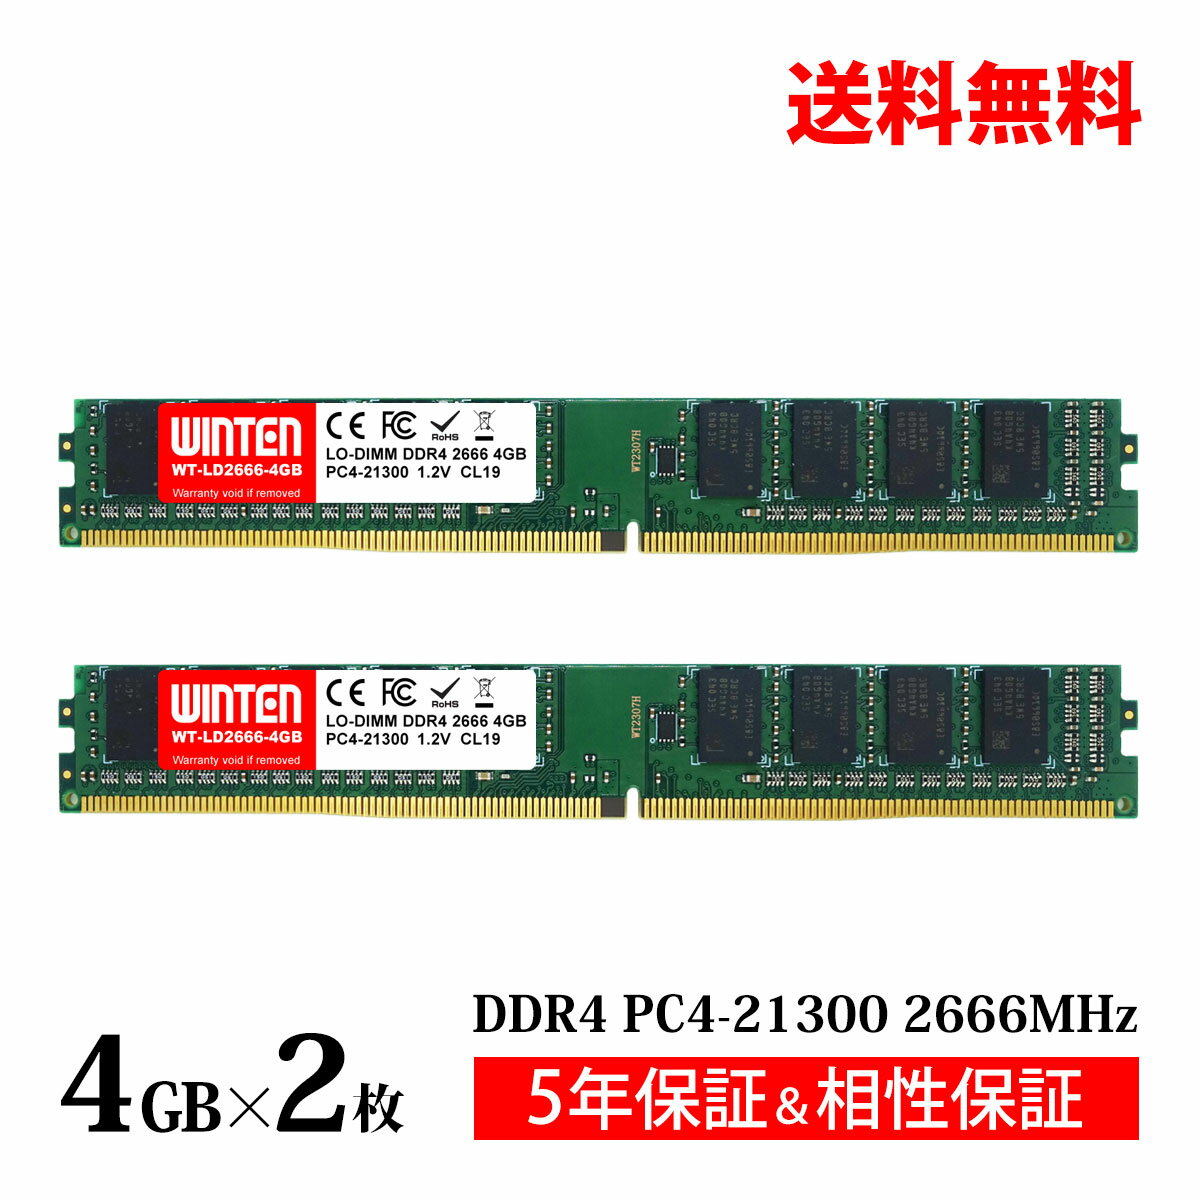 デスクトップPC用 メモリ 8GB(4GB×2枚) PC4-21300(DDR4 2666) WT-LD2666-D8GB【相性保証 製品5年保証 送料無料 即日出荷】DDR4 SDRAM DIMM Dual 内蔵メモリー 増設メモリー 5620